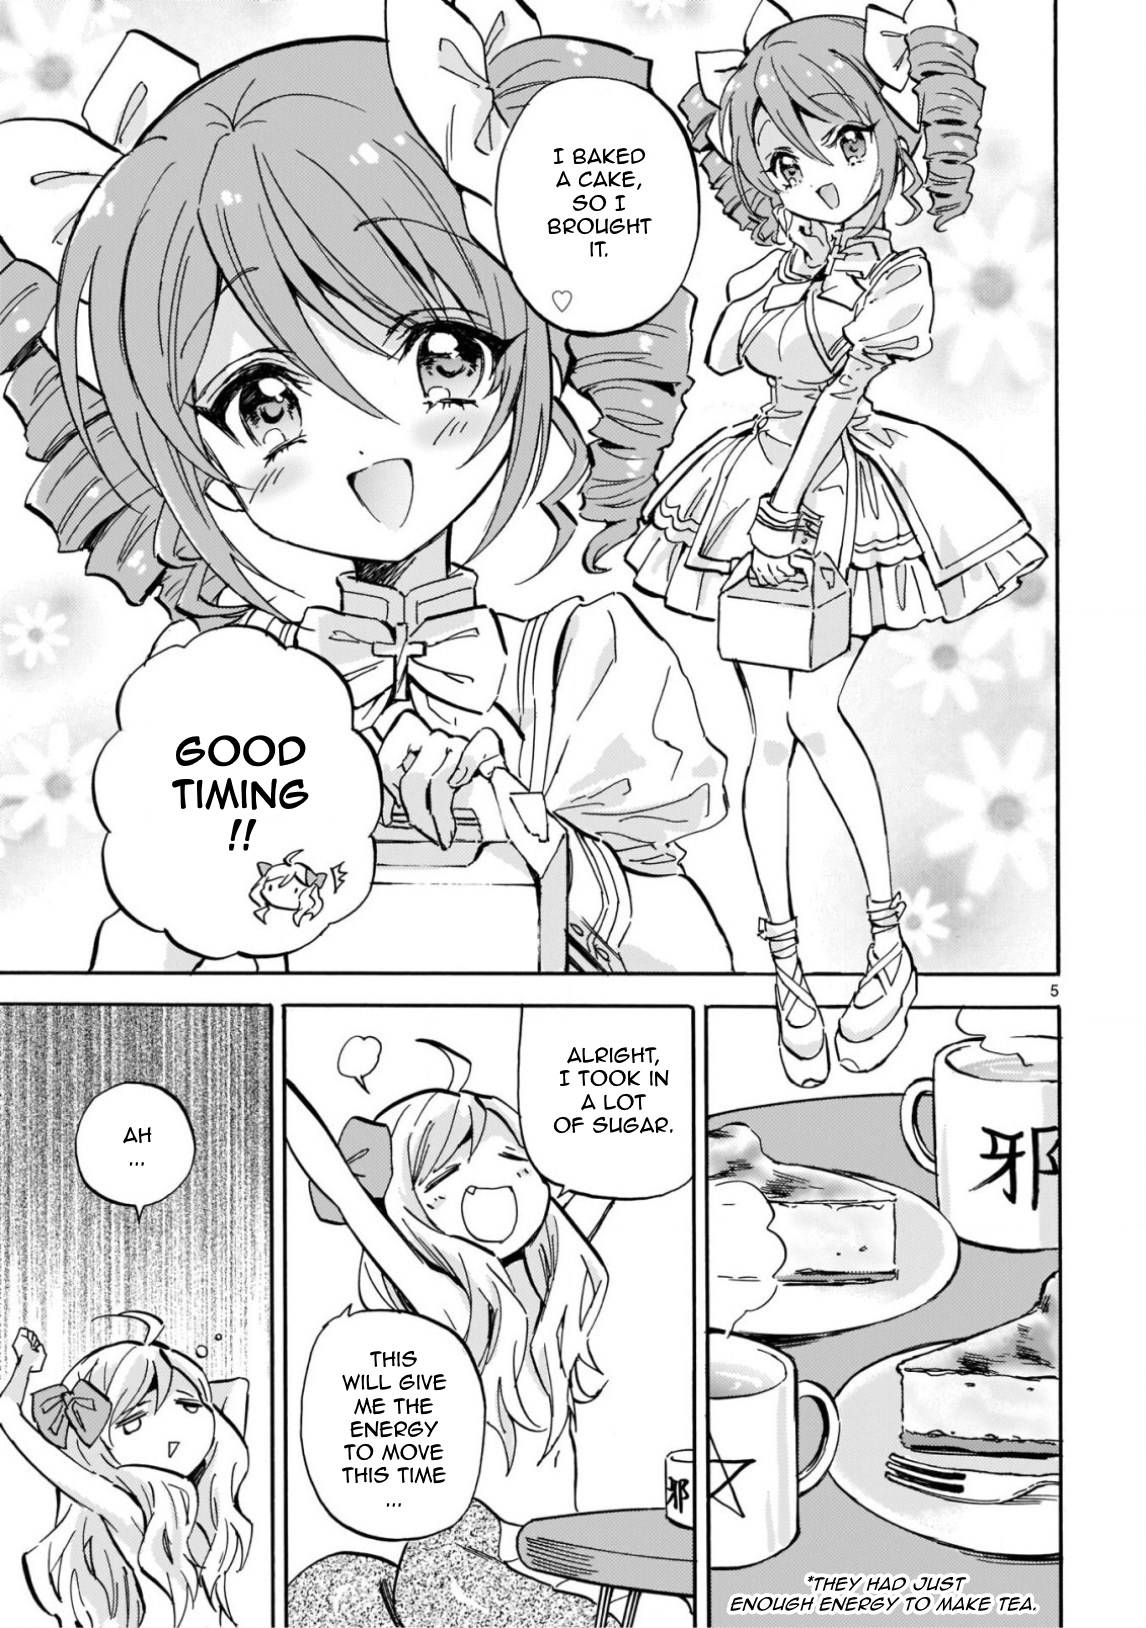 Jashin-chan Dropkick chapter 216 page 5